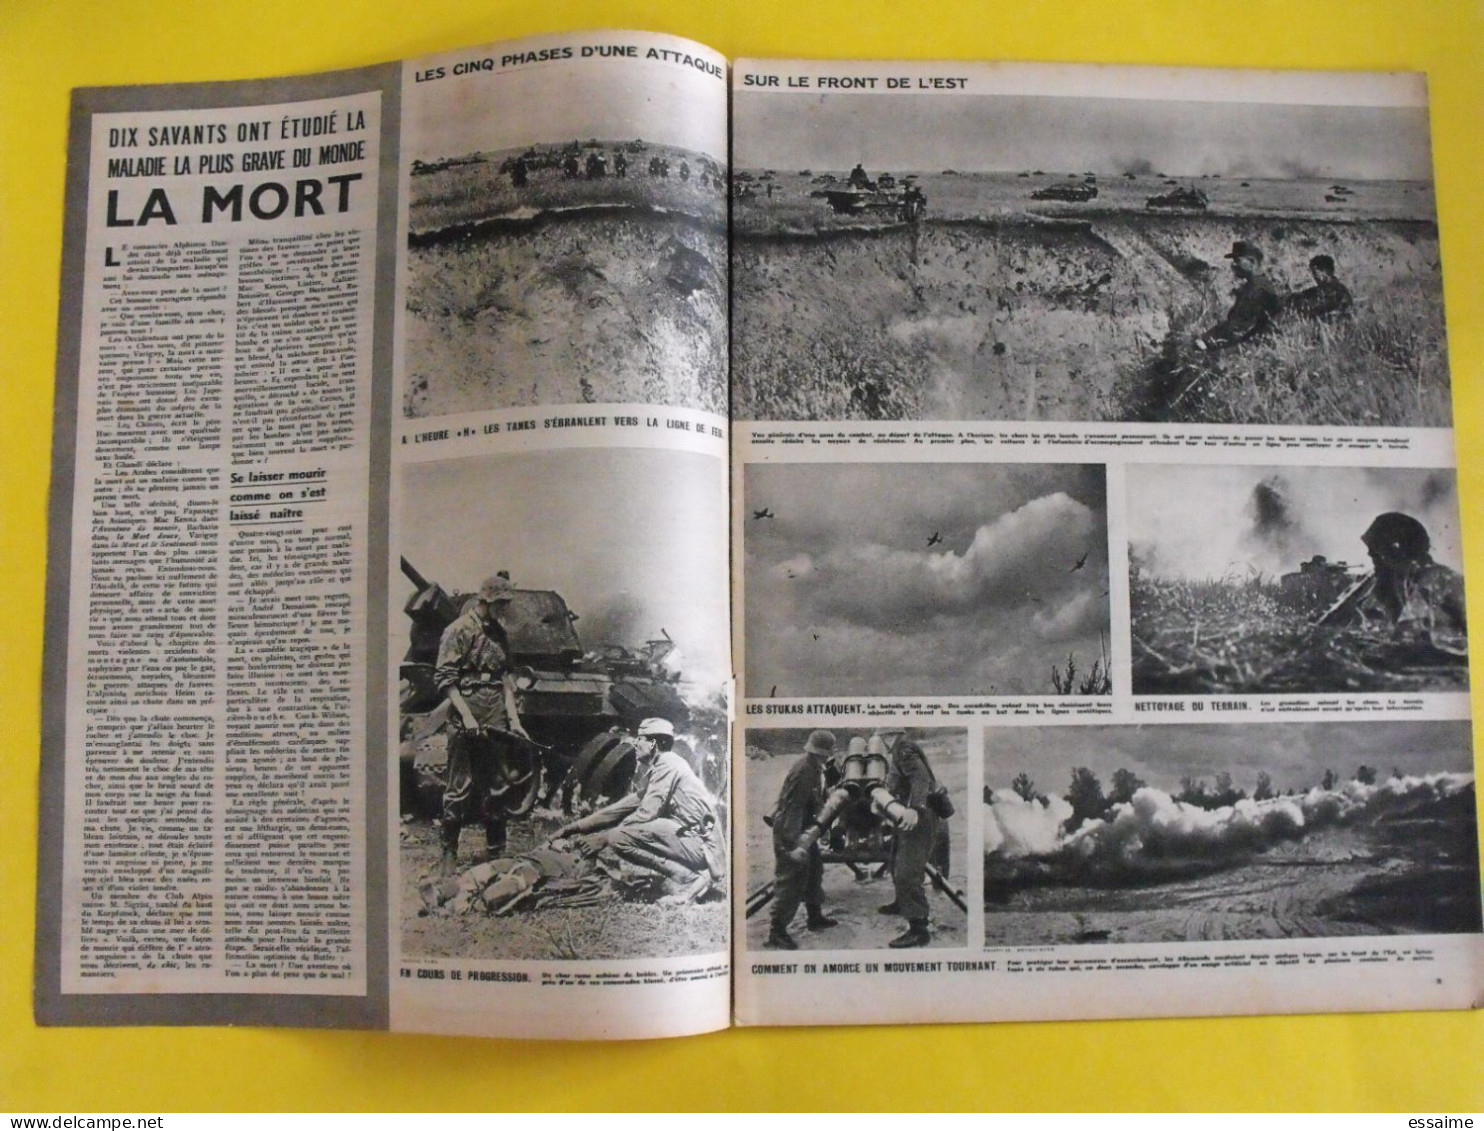 6 revues La semaine de 1943. actualités guerre photos collaboration micheline presle suède espagne sicile crète rome